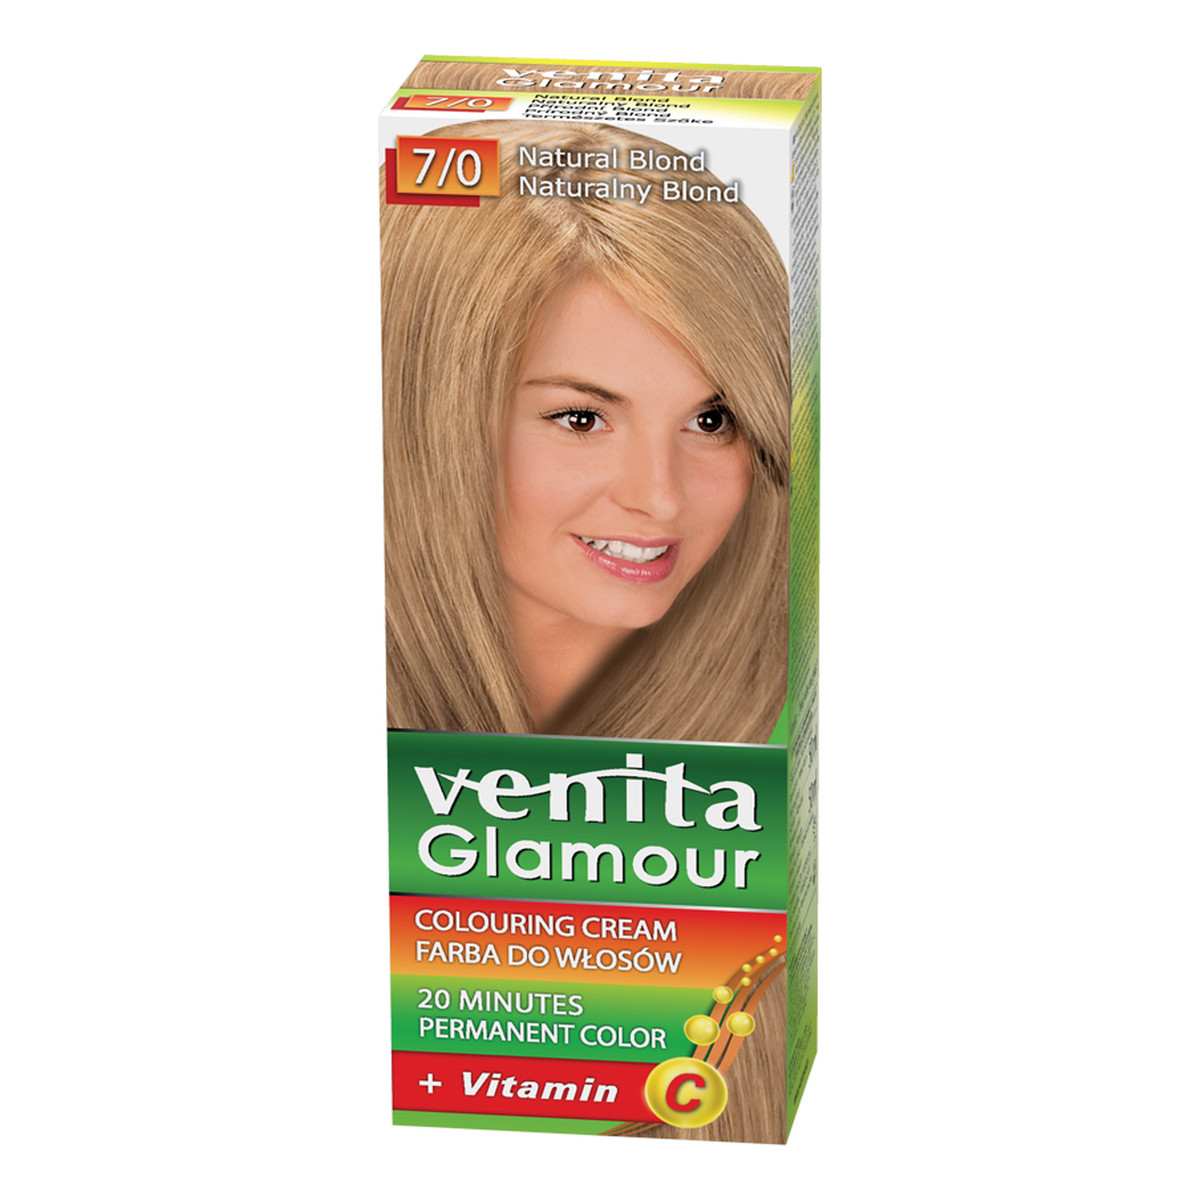 Venita Glamour Farba do włosów